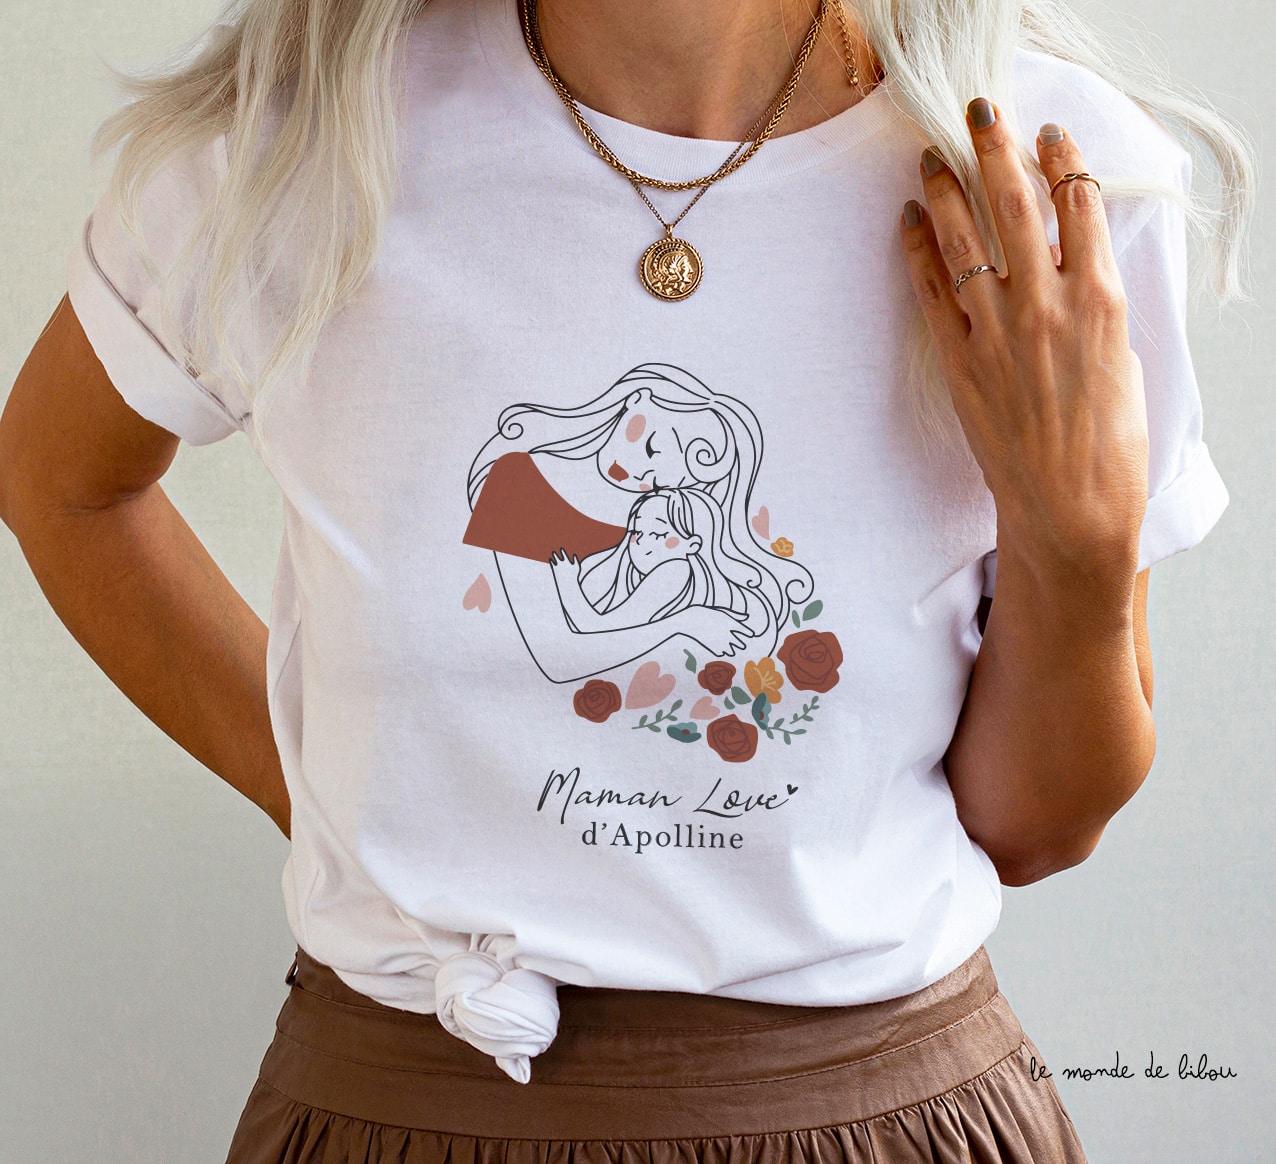 T-shirt Maman Papa Love - Le Monde de Bibou